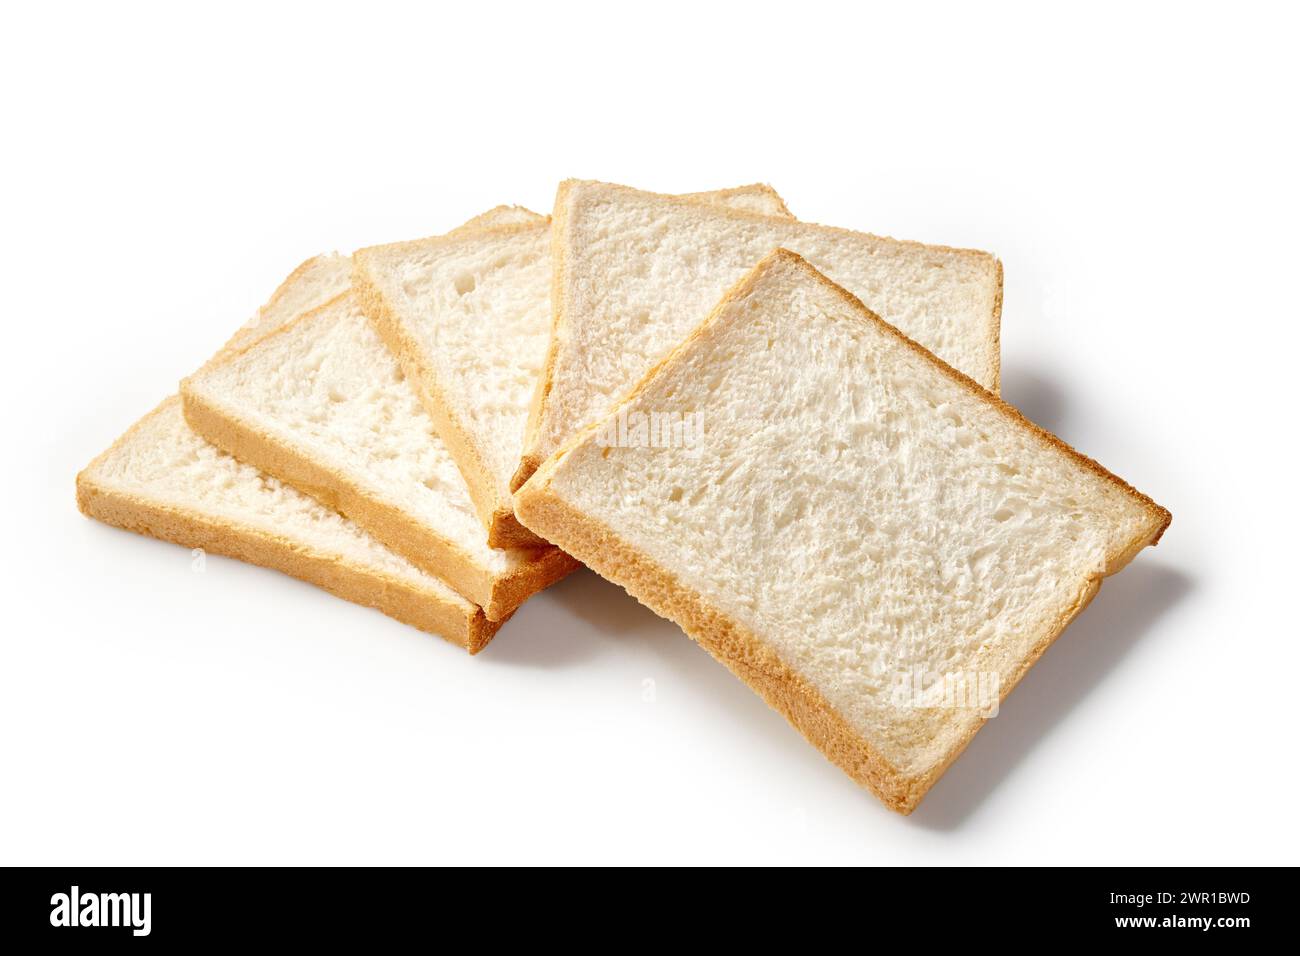 Stapel weißer Sandwichbrotscheiben mit weicher Textur und goldenen Kanten, angeordnet auf einem sauberen Hintergrund, perfekt für Sandwiches oder knusprige Toasts Stockfoto